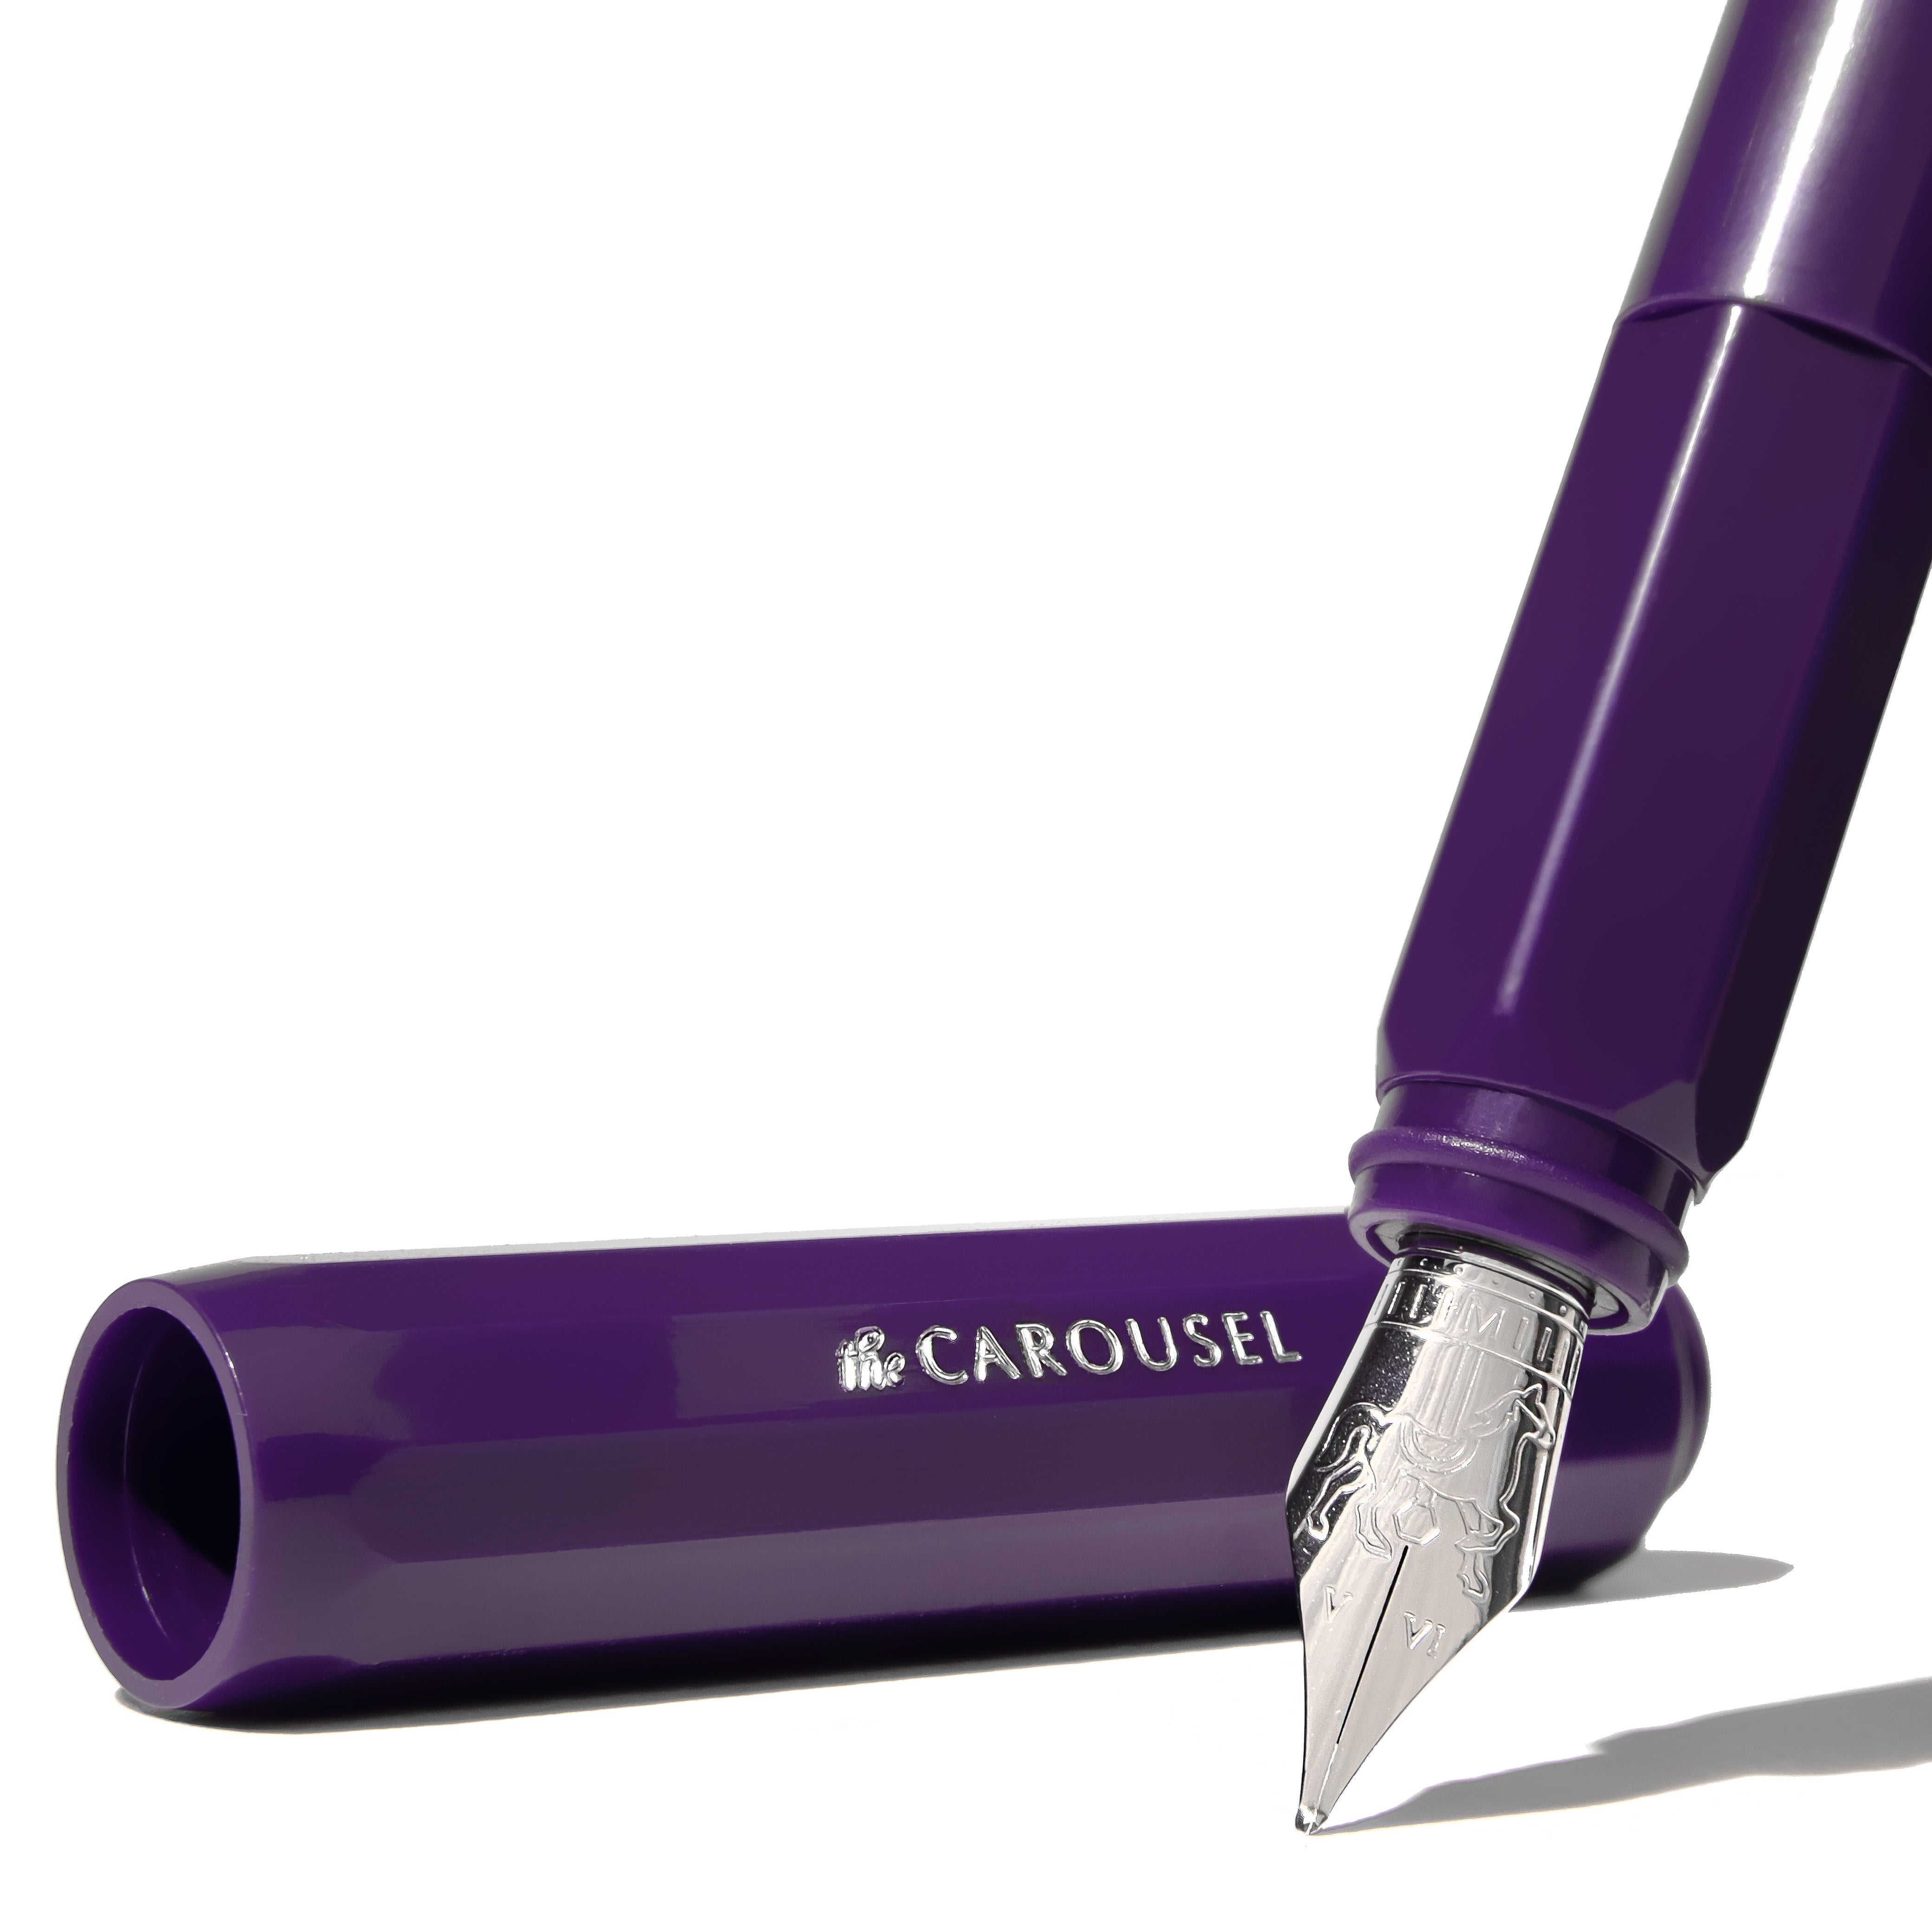 Carousel Pen - Medium - Poison Envy